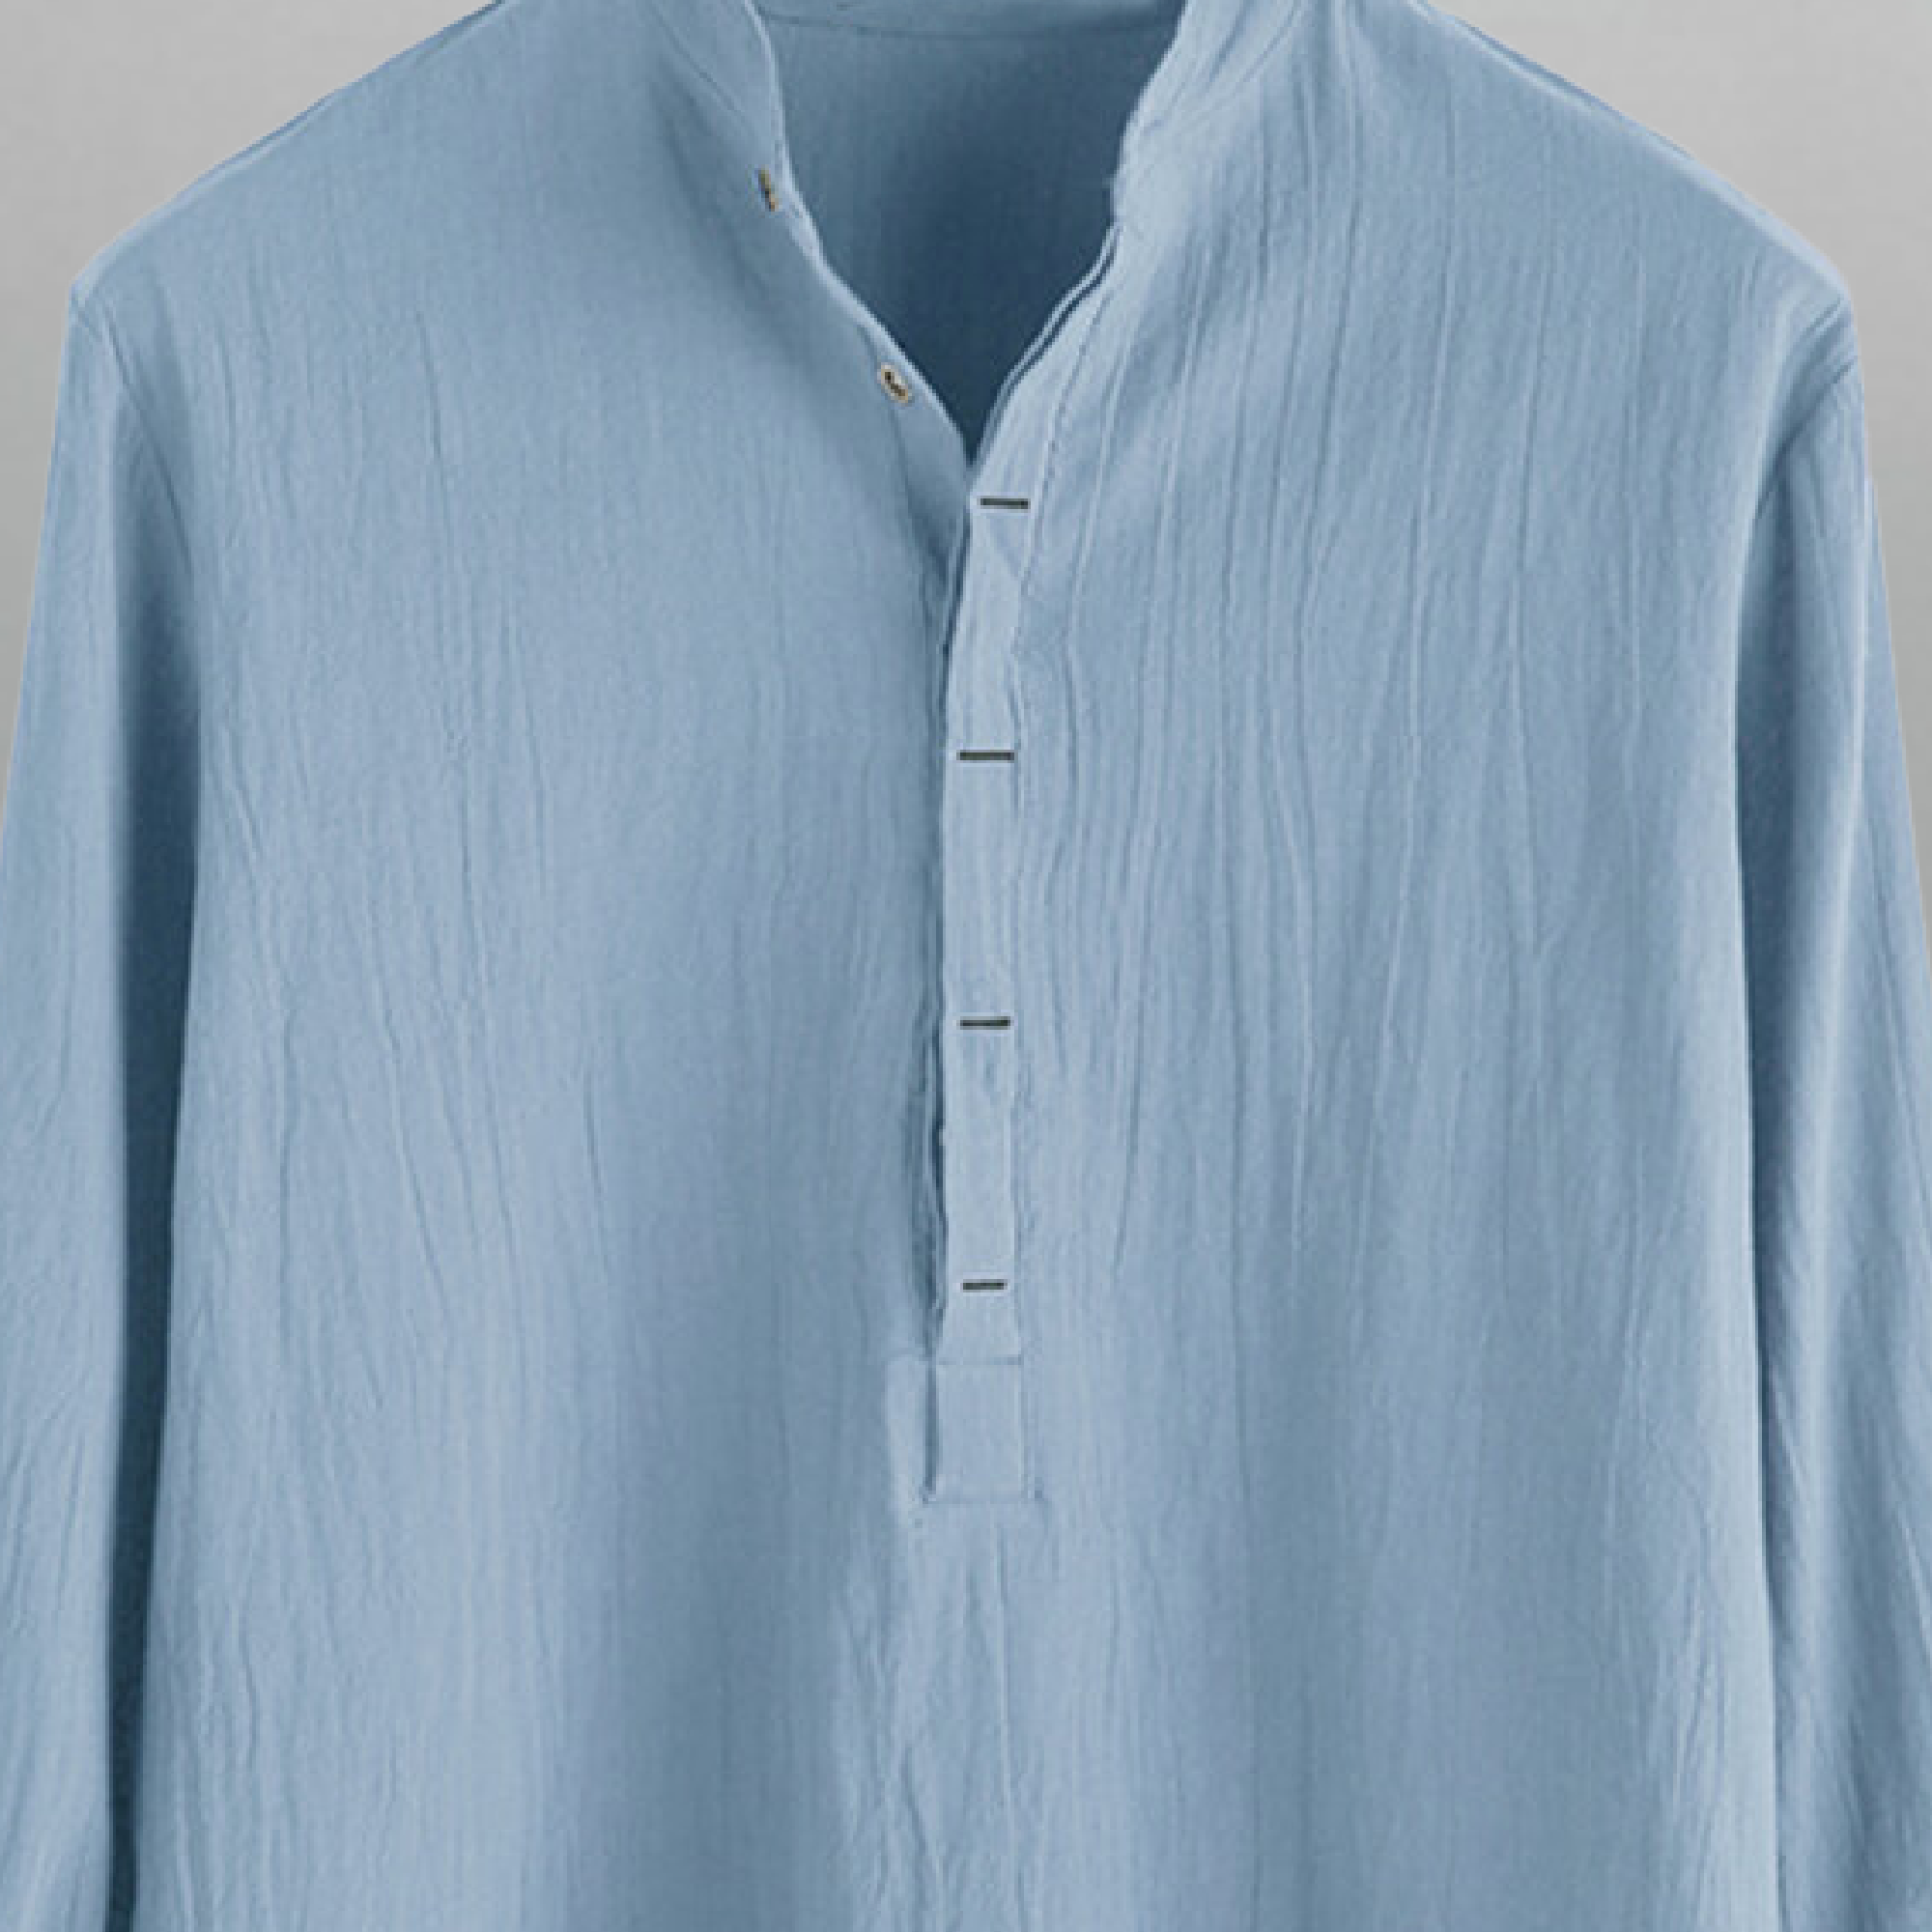 Men's Light Blue T-shirt style textured shirt-RMS025